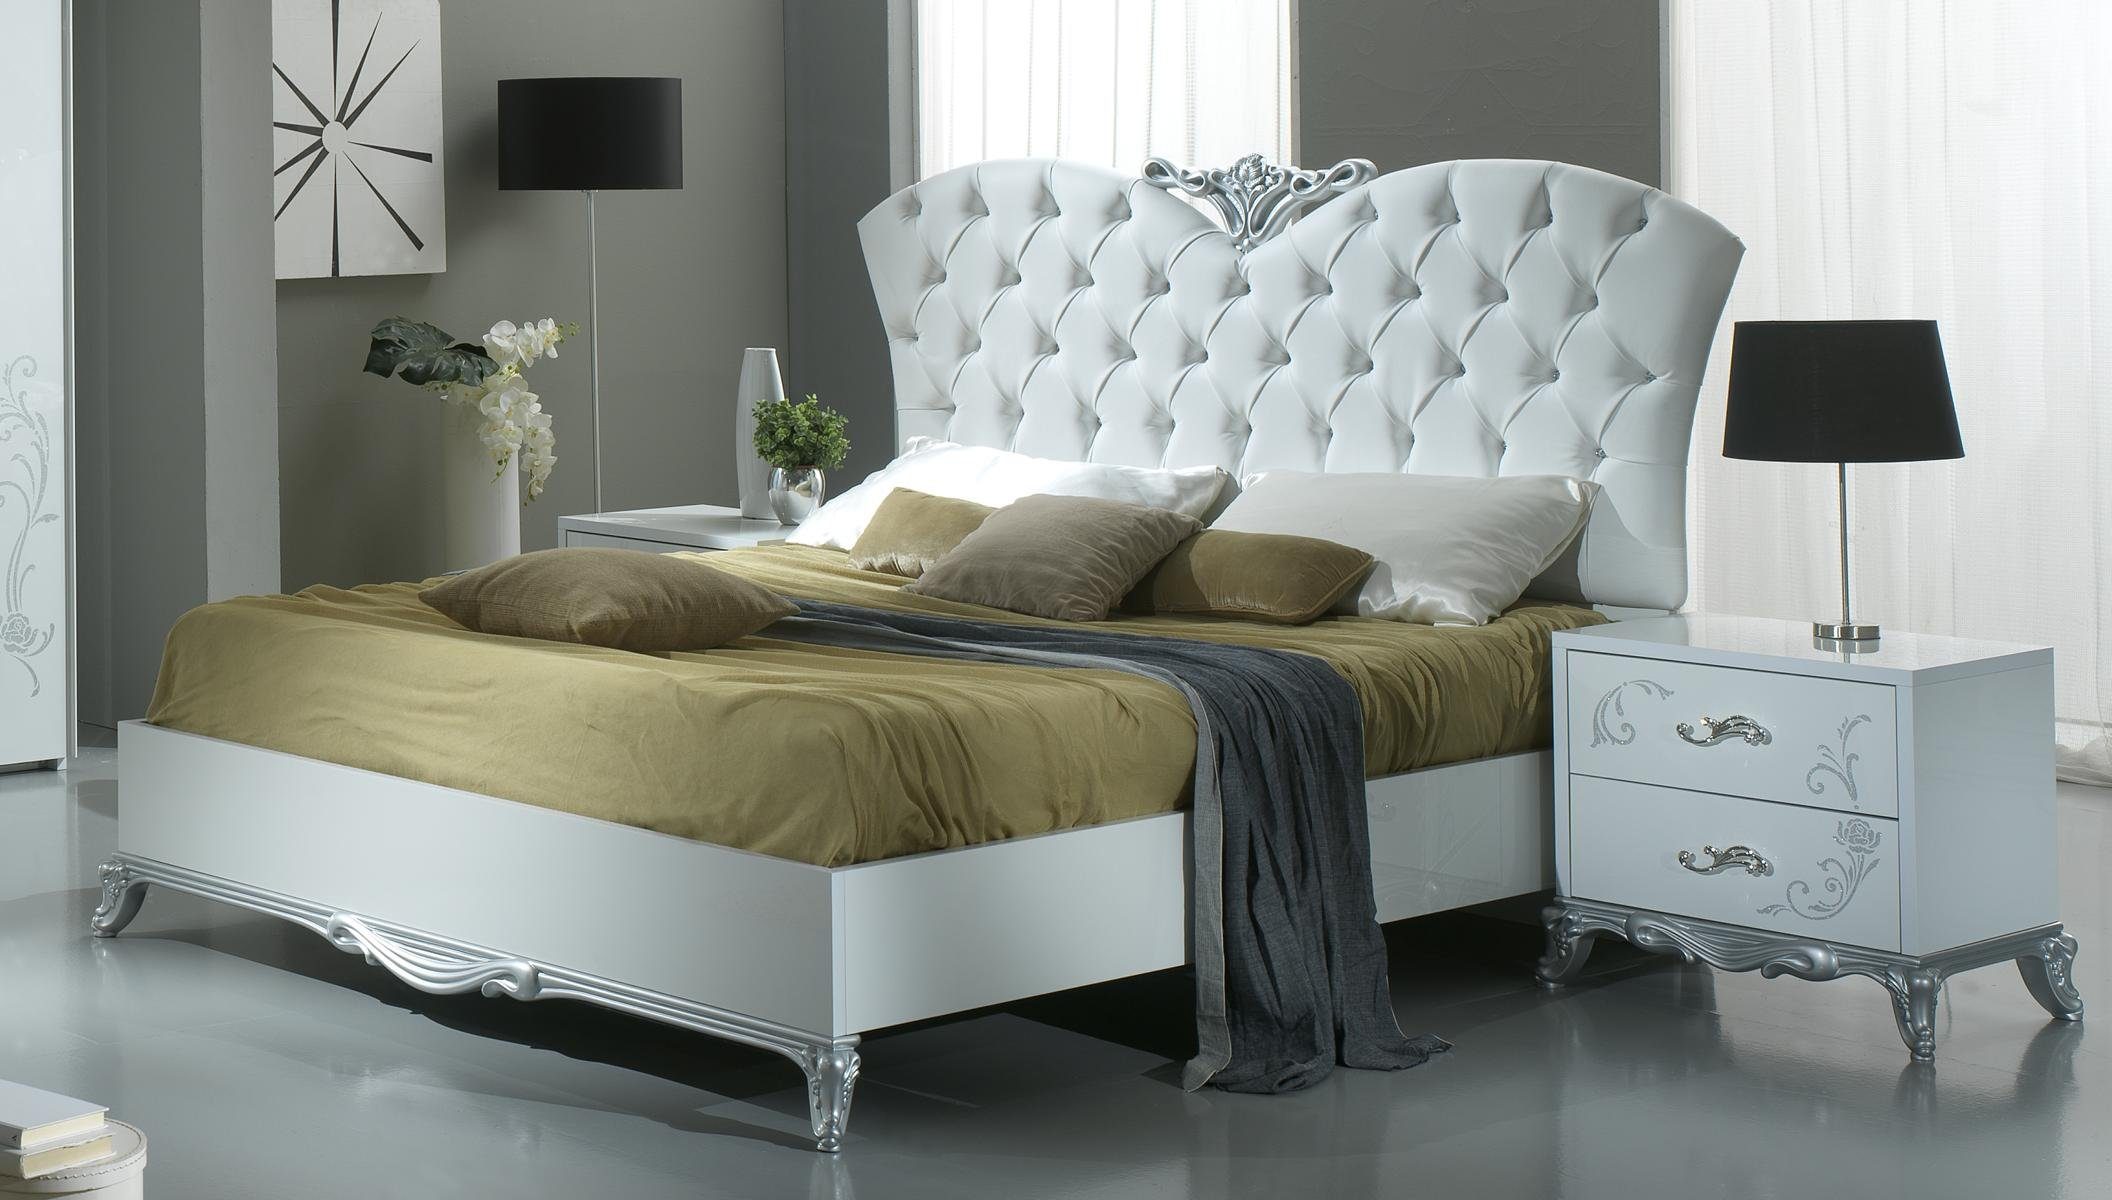 JVmoebel Bett Luxus Italienische Möbel 160x200 Leder Betten Bett